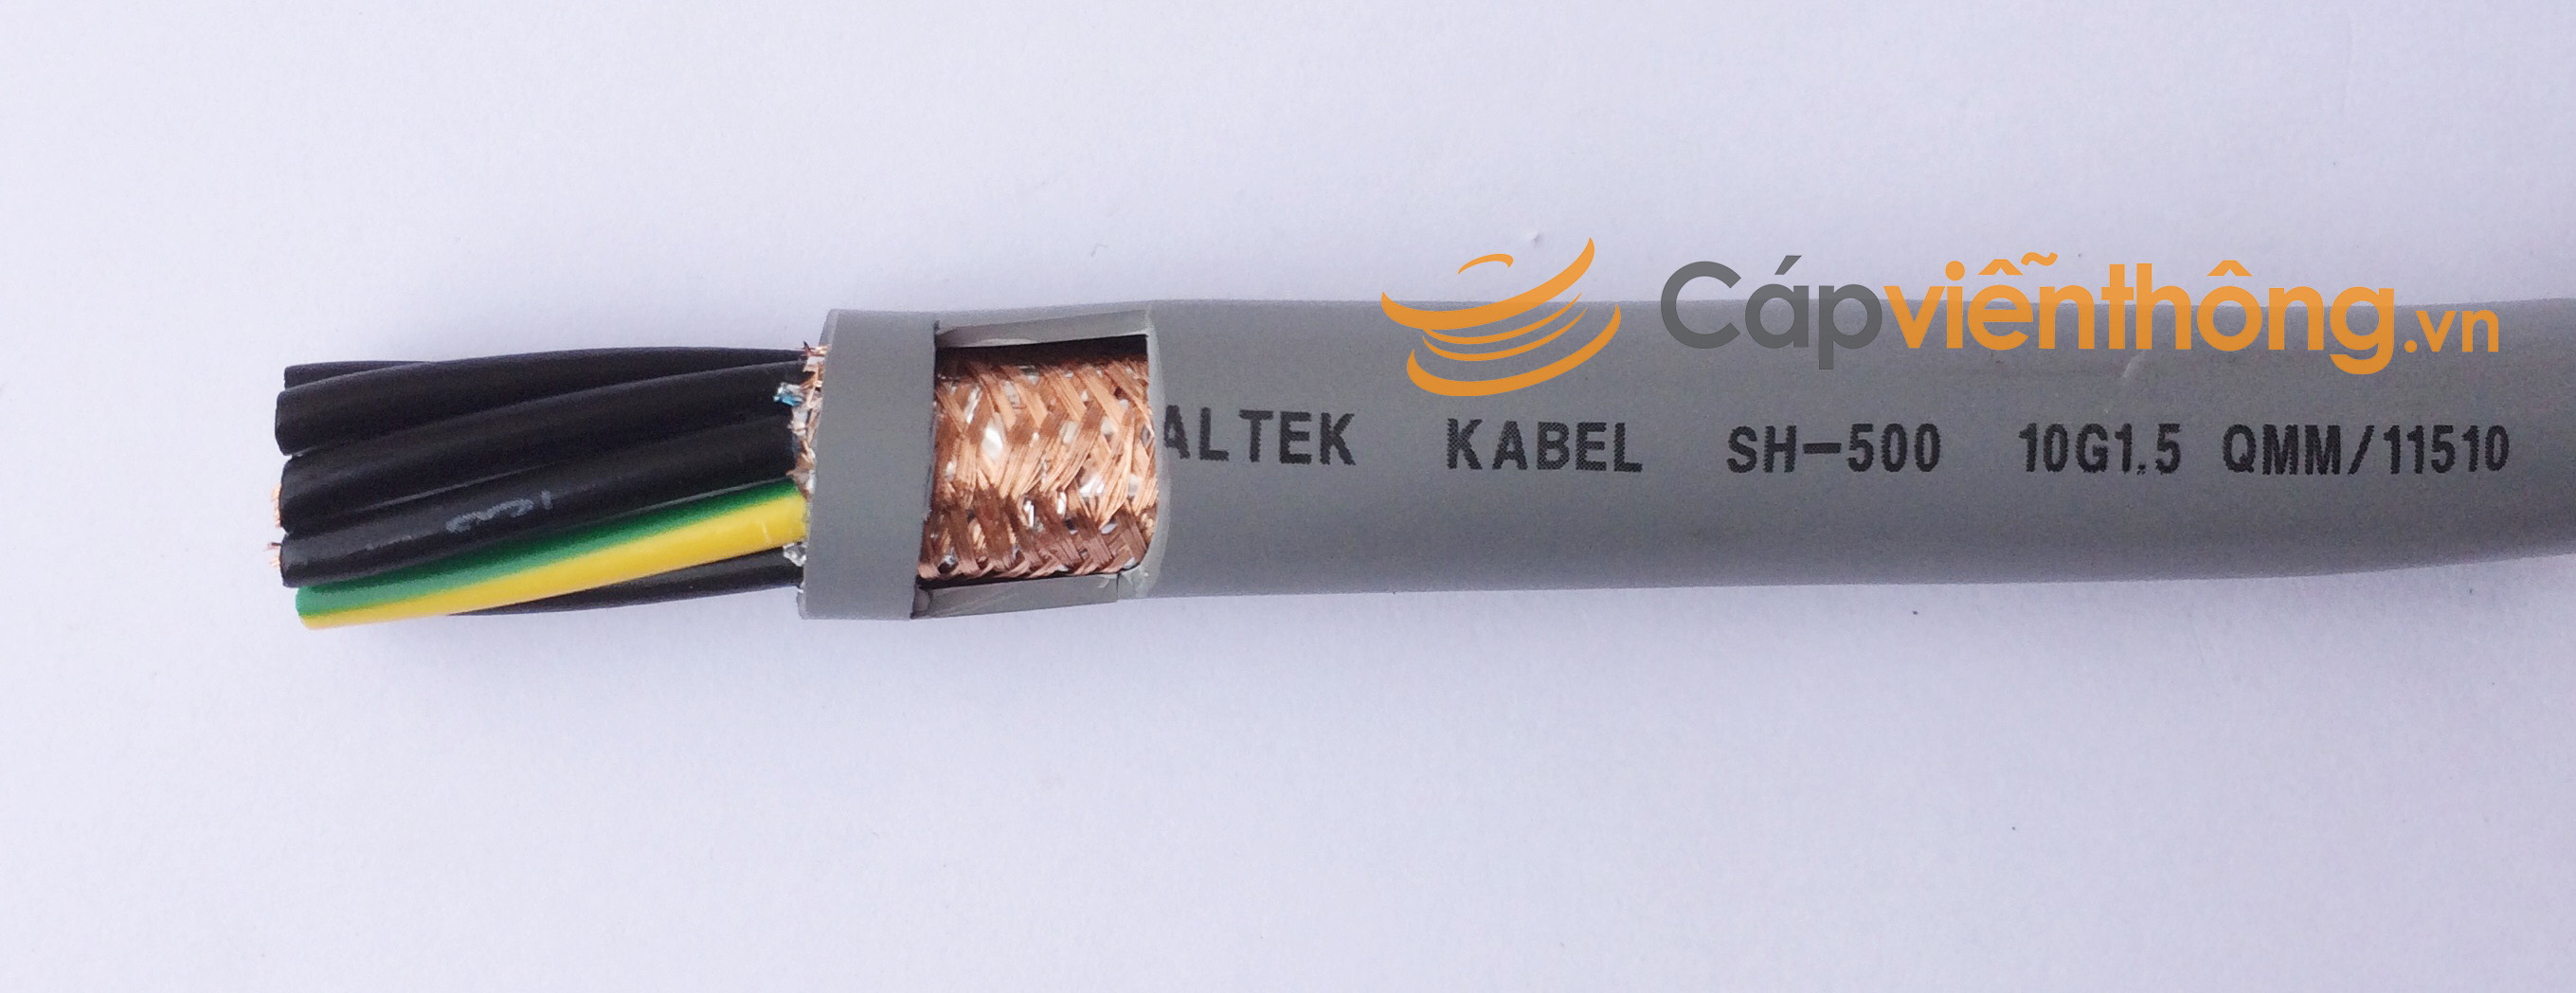 Cáp điều khiển có lưới Altek Kabel SH-500 10G 1.5QMM